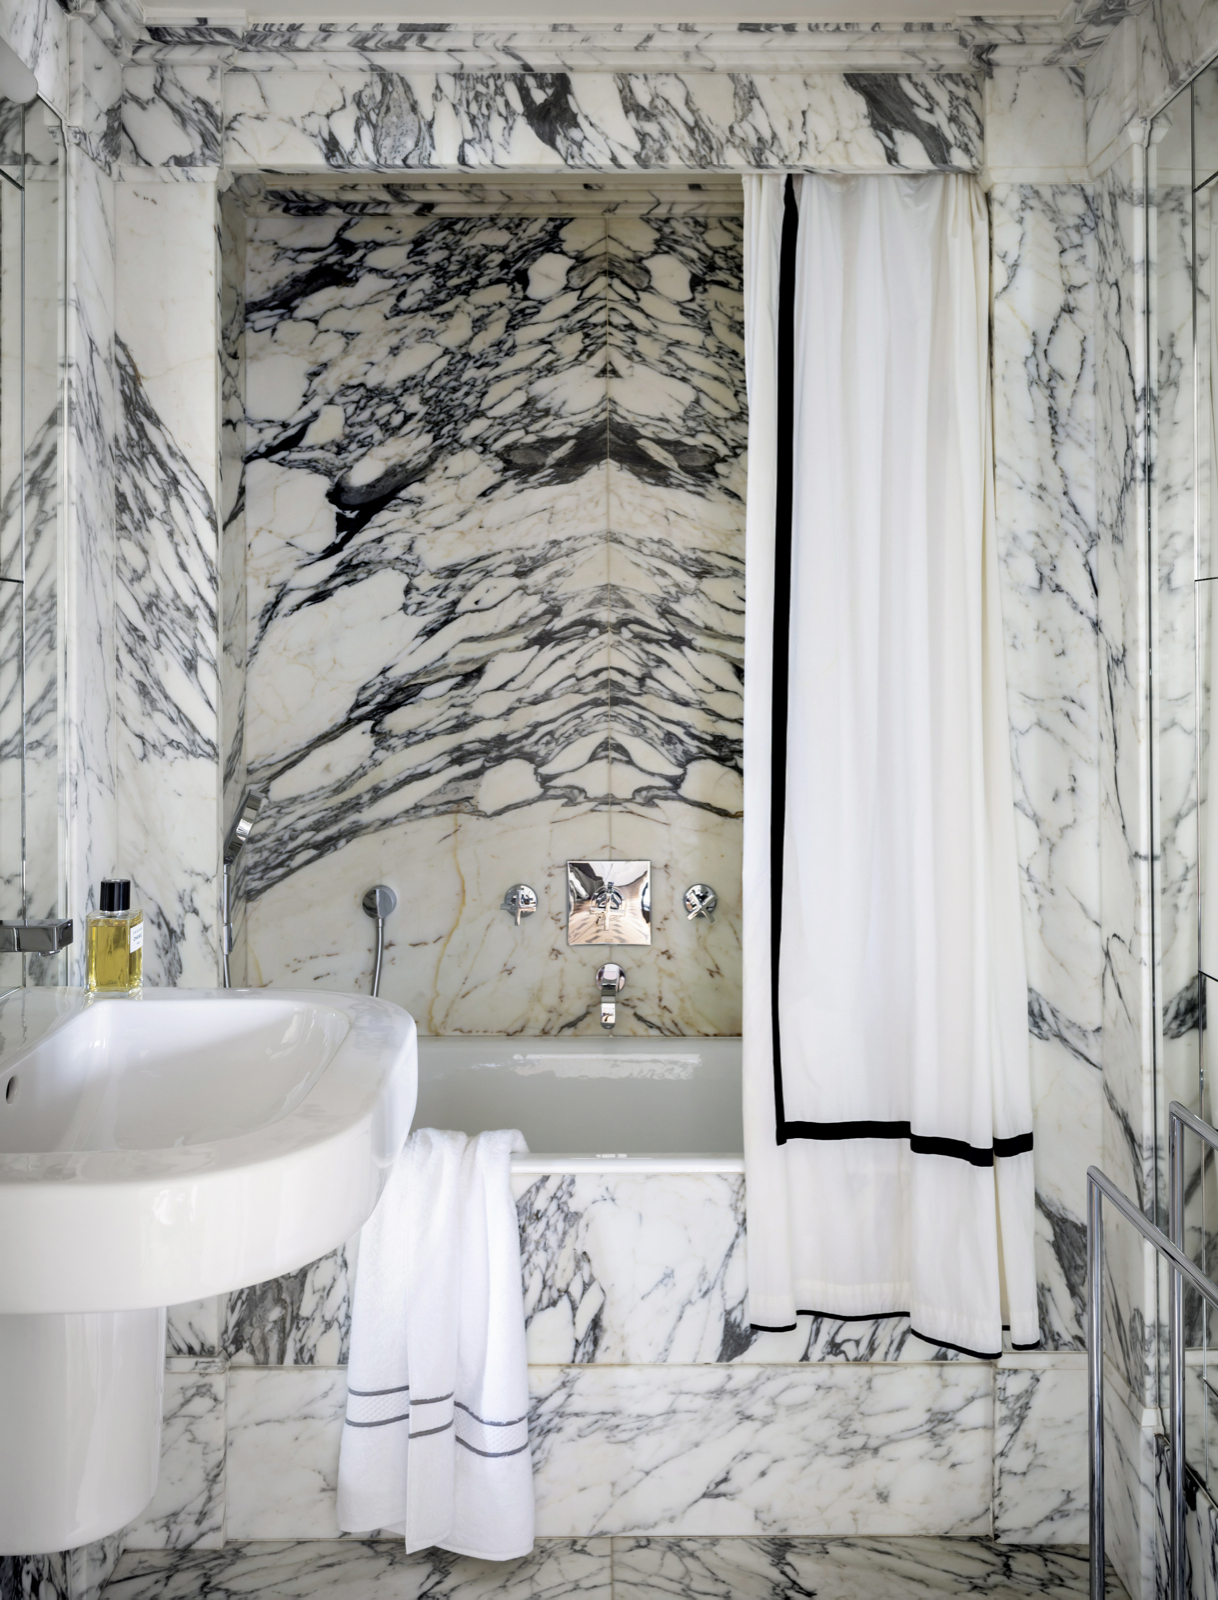 NTK đã lựa chọn màu đen trắng của đá cẩm thạch Arabescato để thiết kế nội thất phòng tắm cho vẻ đẹp sang trọng, đắt giá!